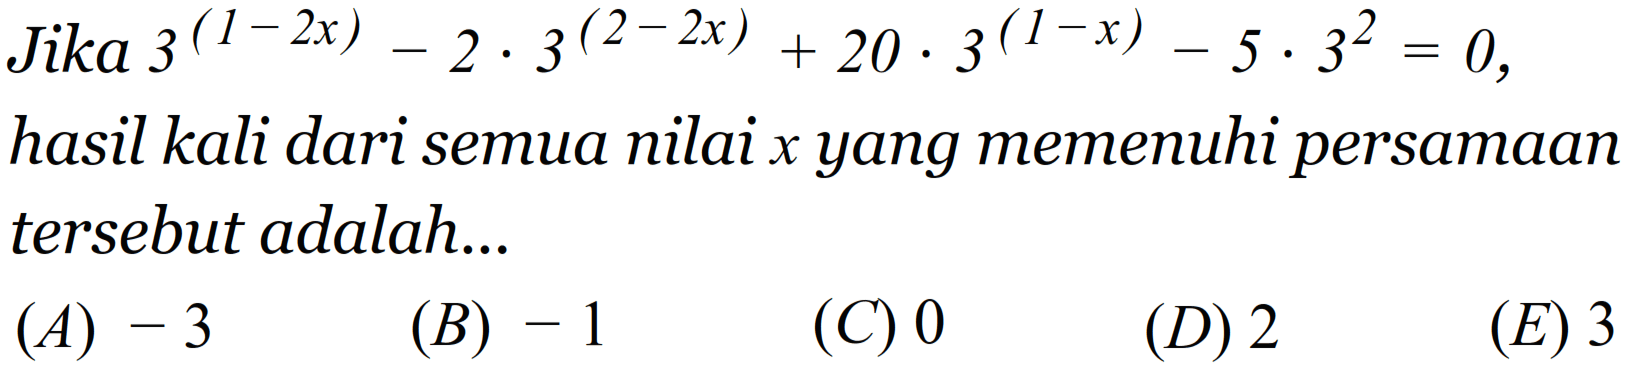 Jika 3^(1-2x)-2.3^(2-2x)+20.3^(1-x)-5.3^2=0, hasil kali dari semua nilai x yang memenuhi persamaan tersebut adalah ....